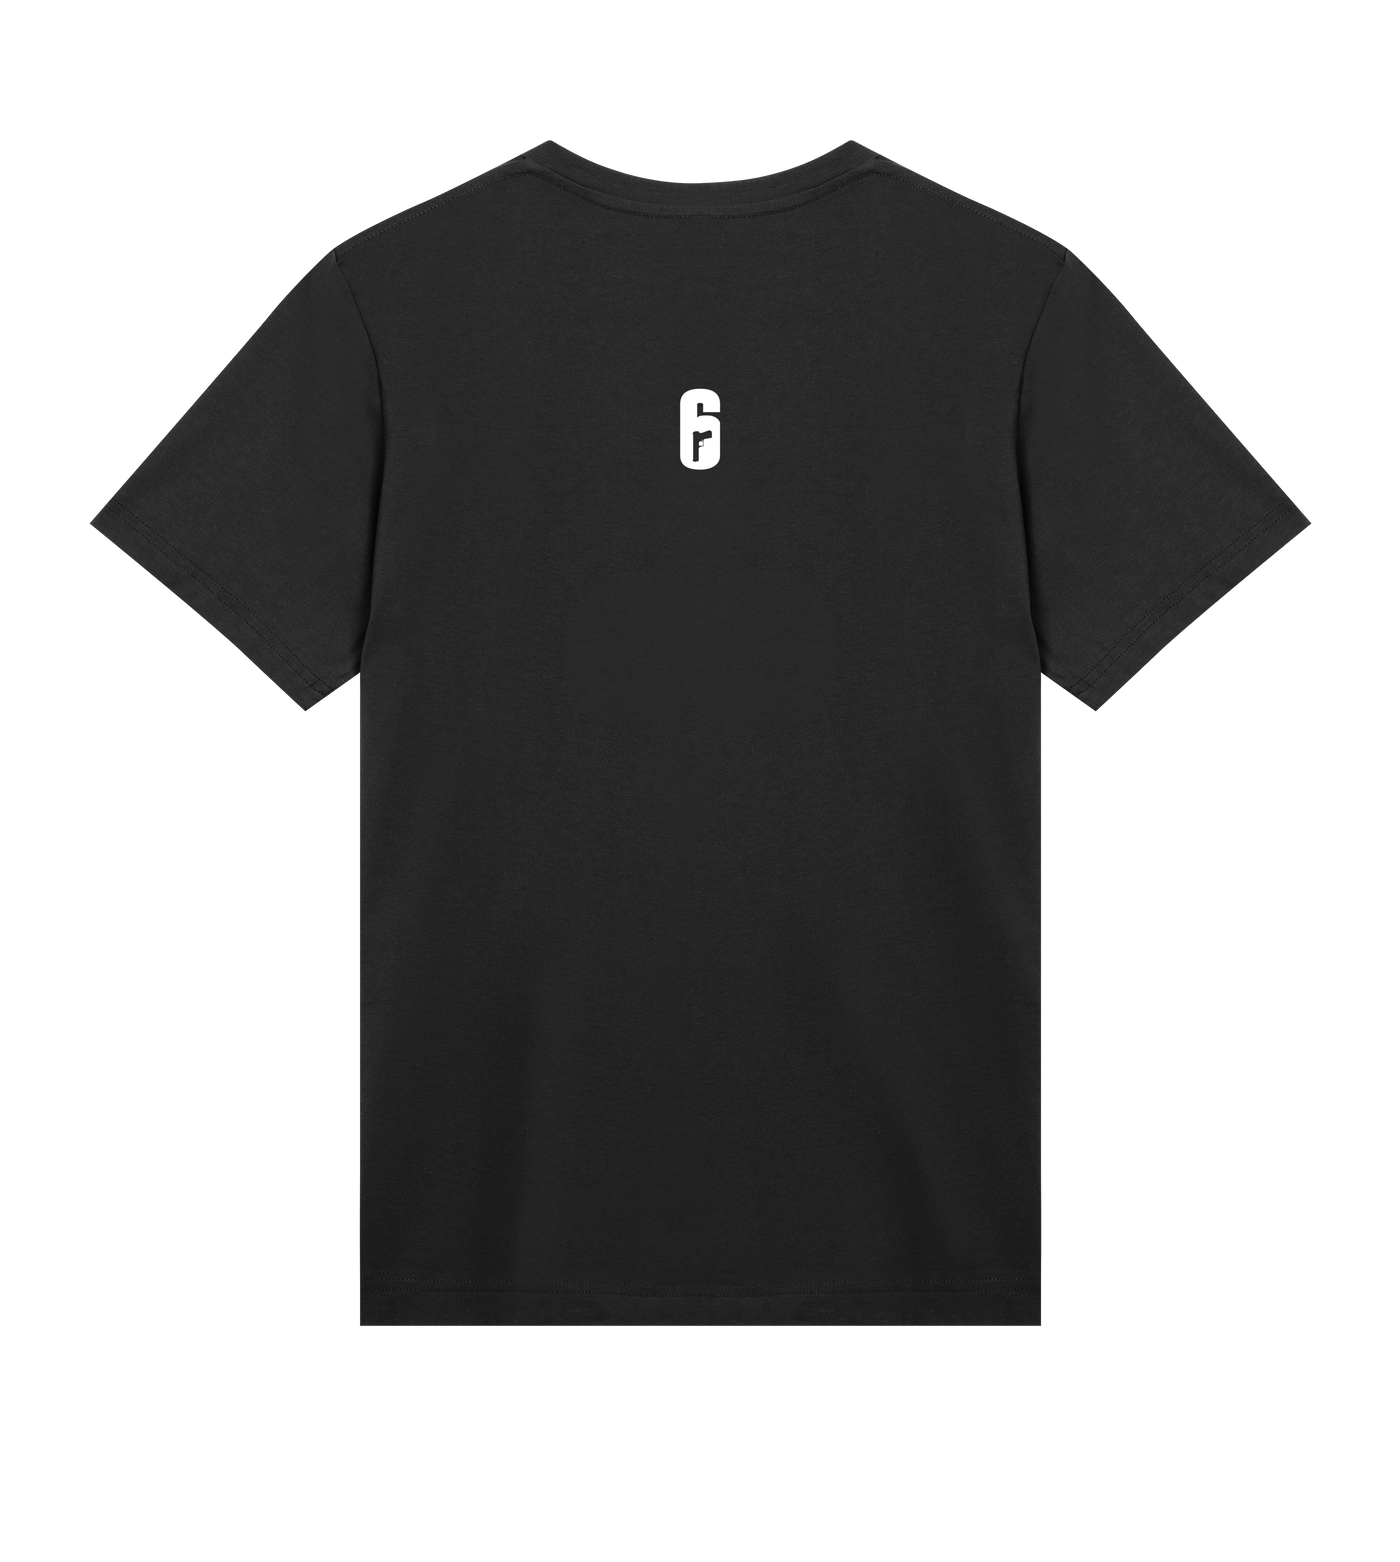 6 SIEGE - Nighthaven T-shirt